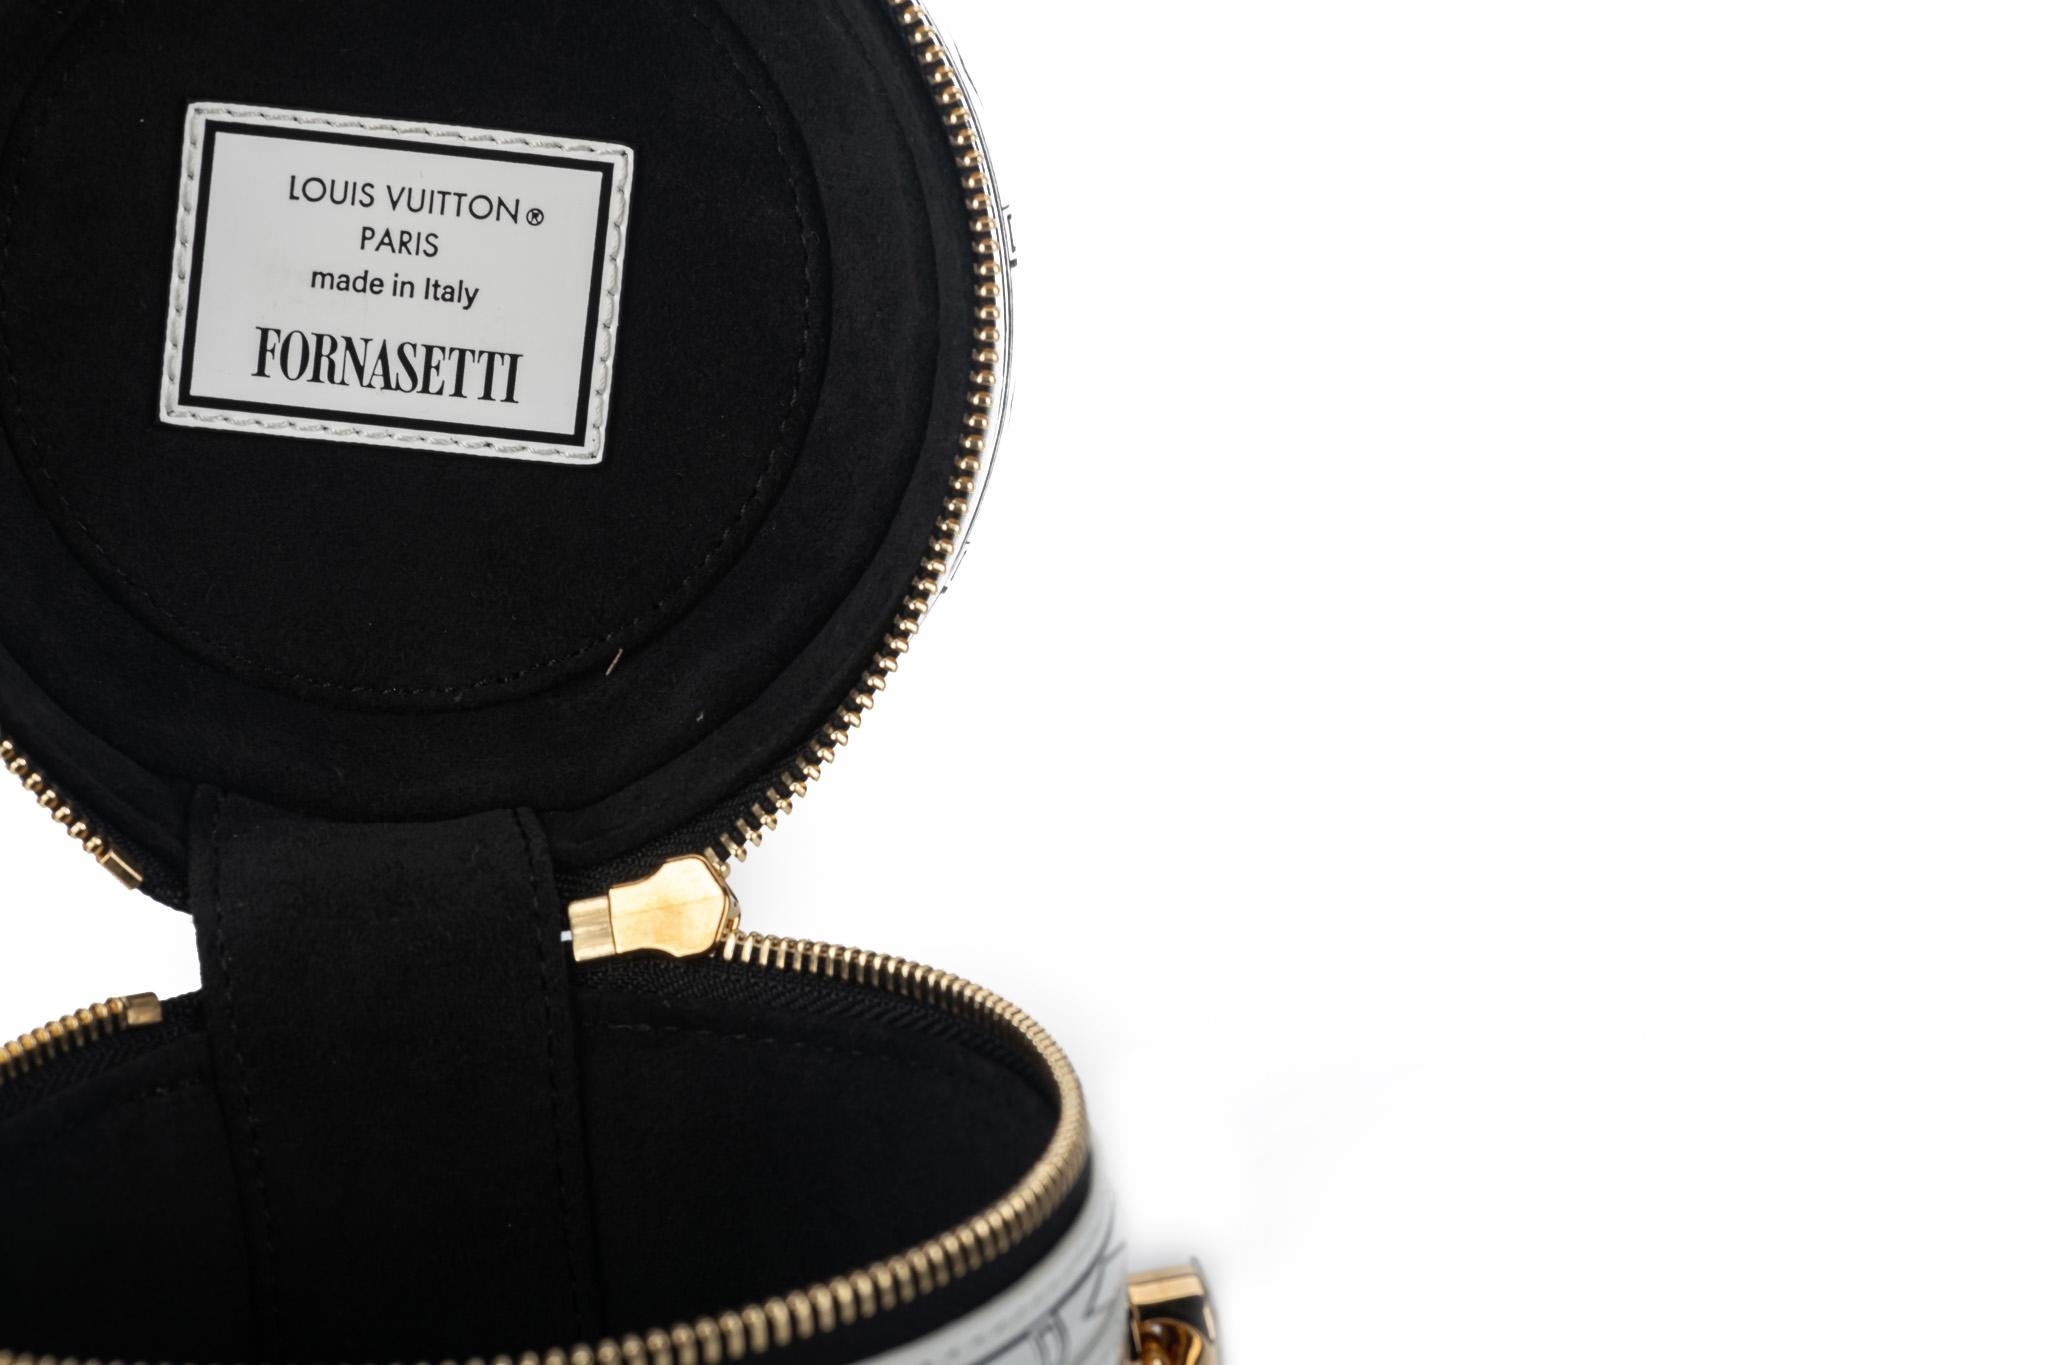 New Vuitton Fornasetti Battistero Bag In Box 9